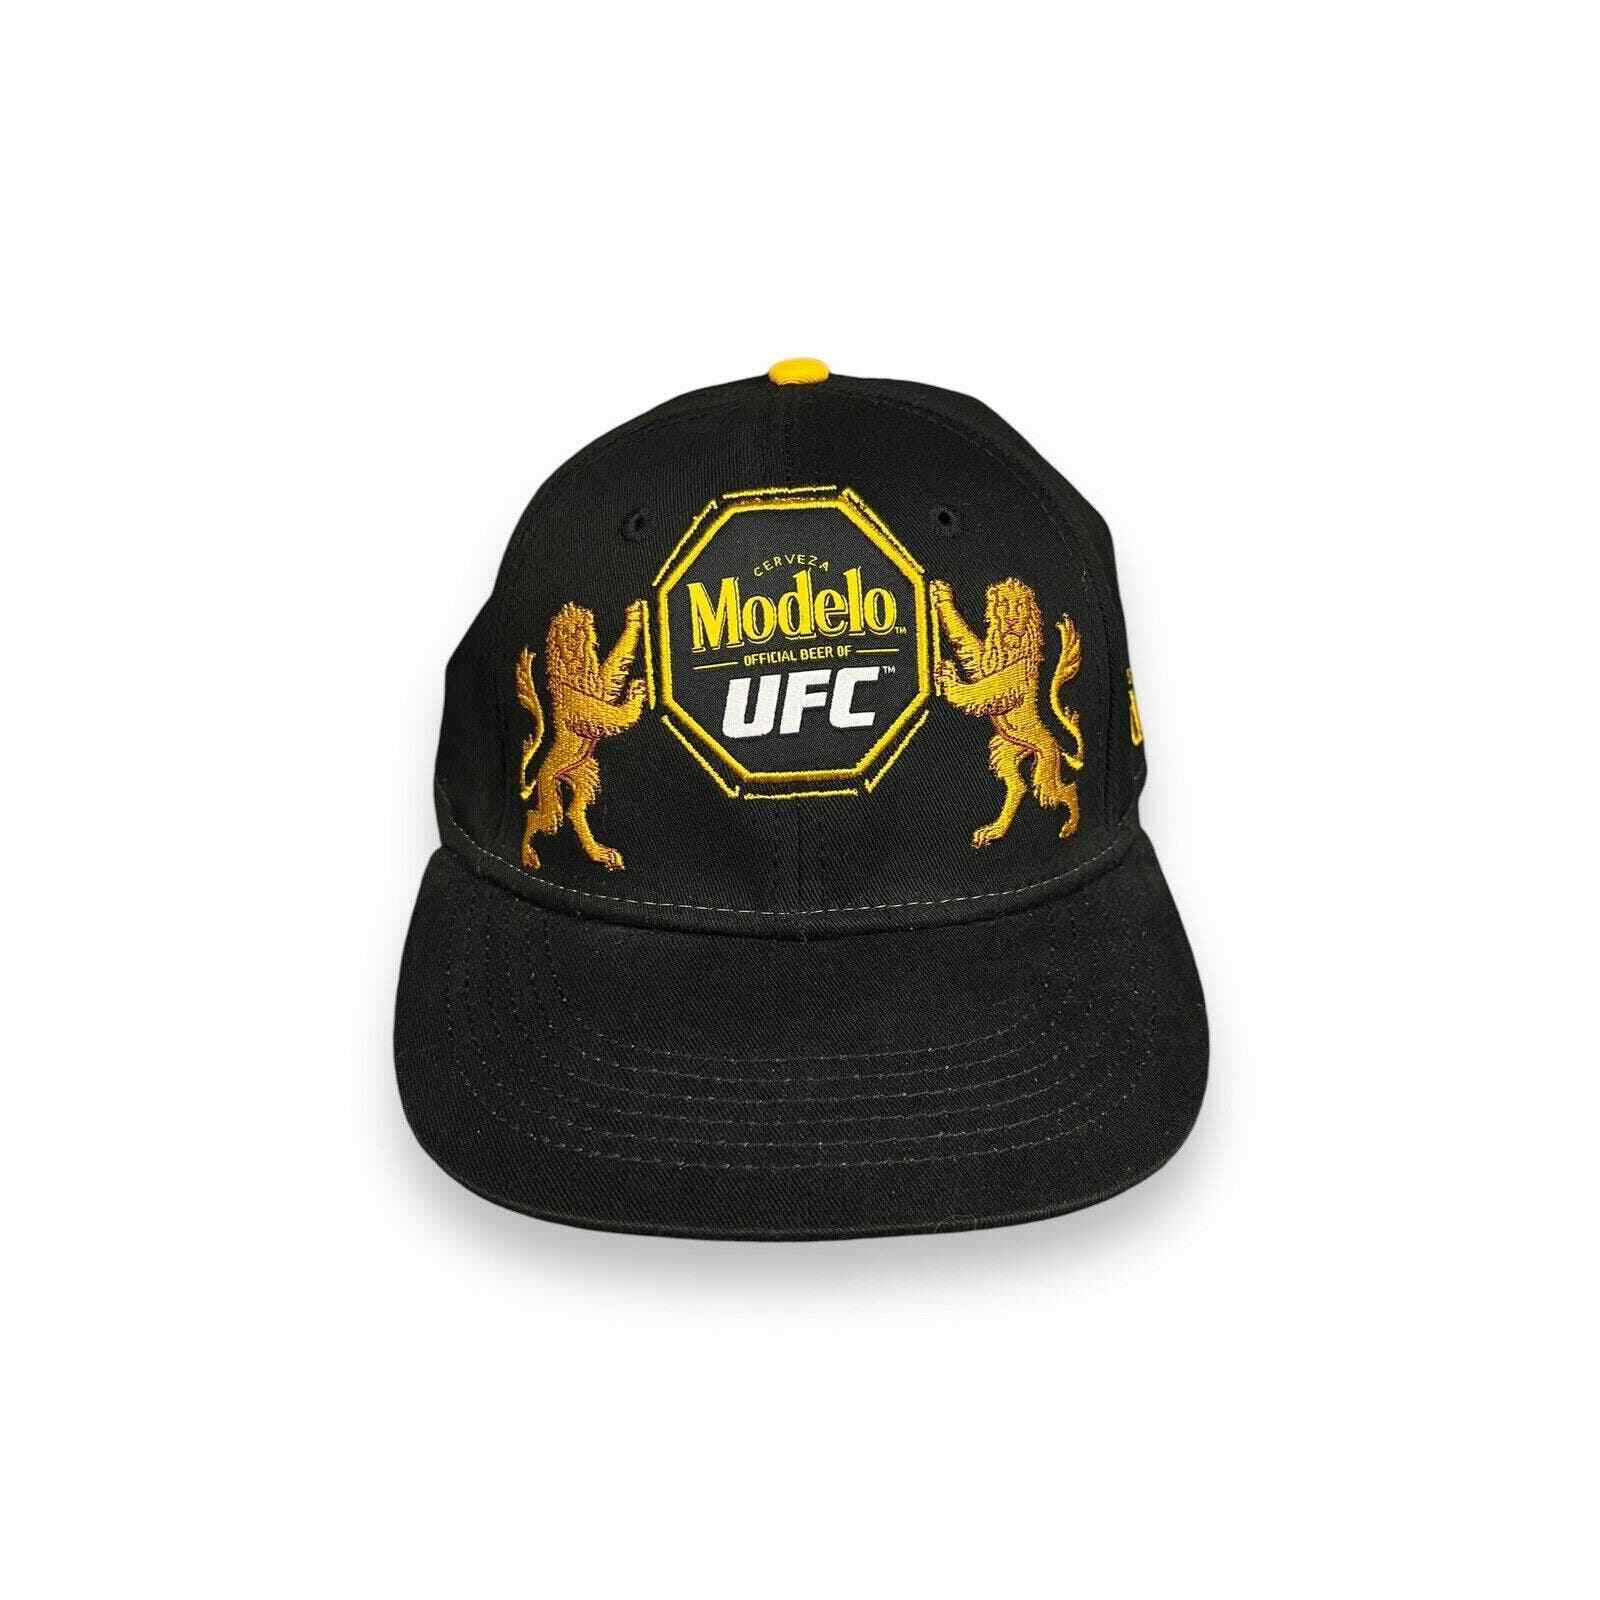 Modelo Cerveza UFC Black Gold Snap Back Adjustable Hat Rare Lions Embroidered